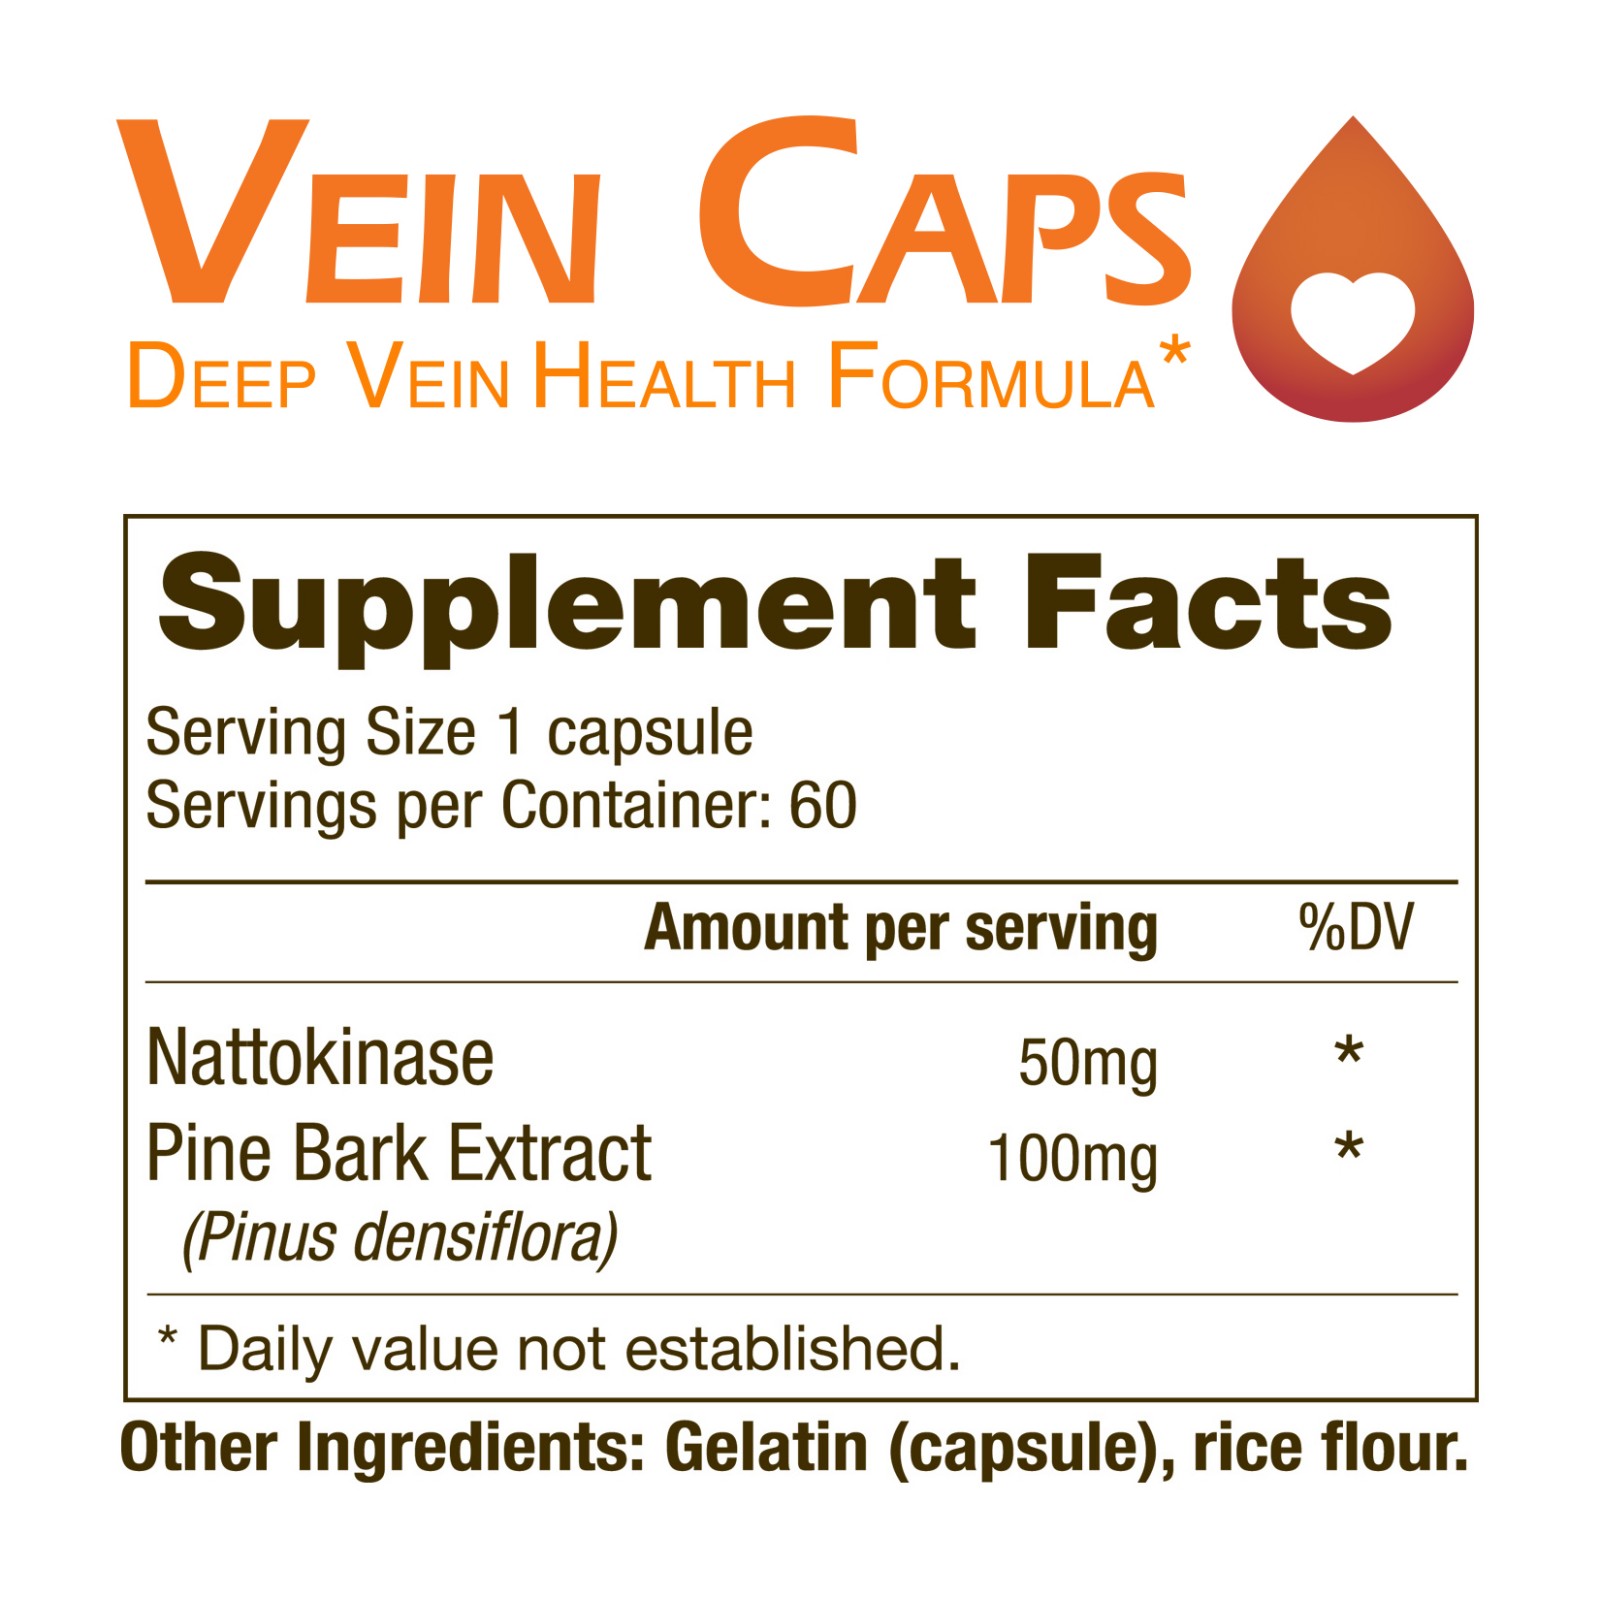 vein-caps-ingredients-title